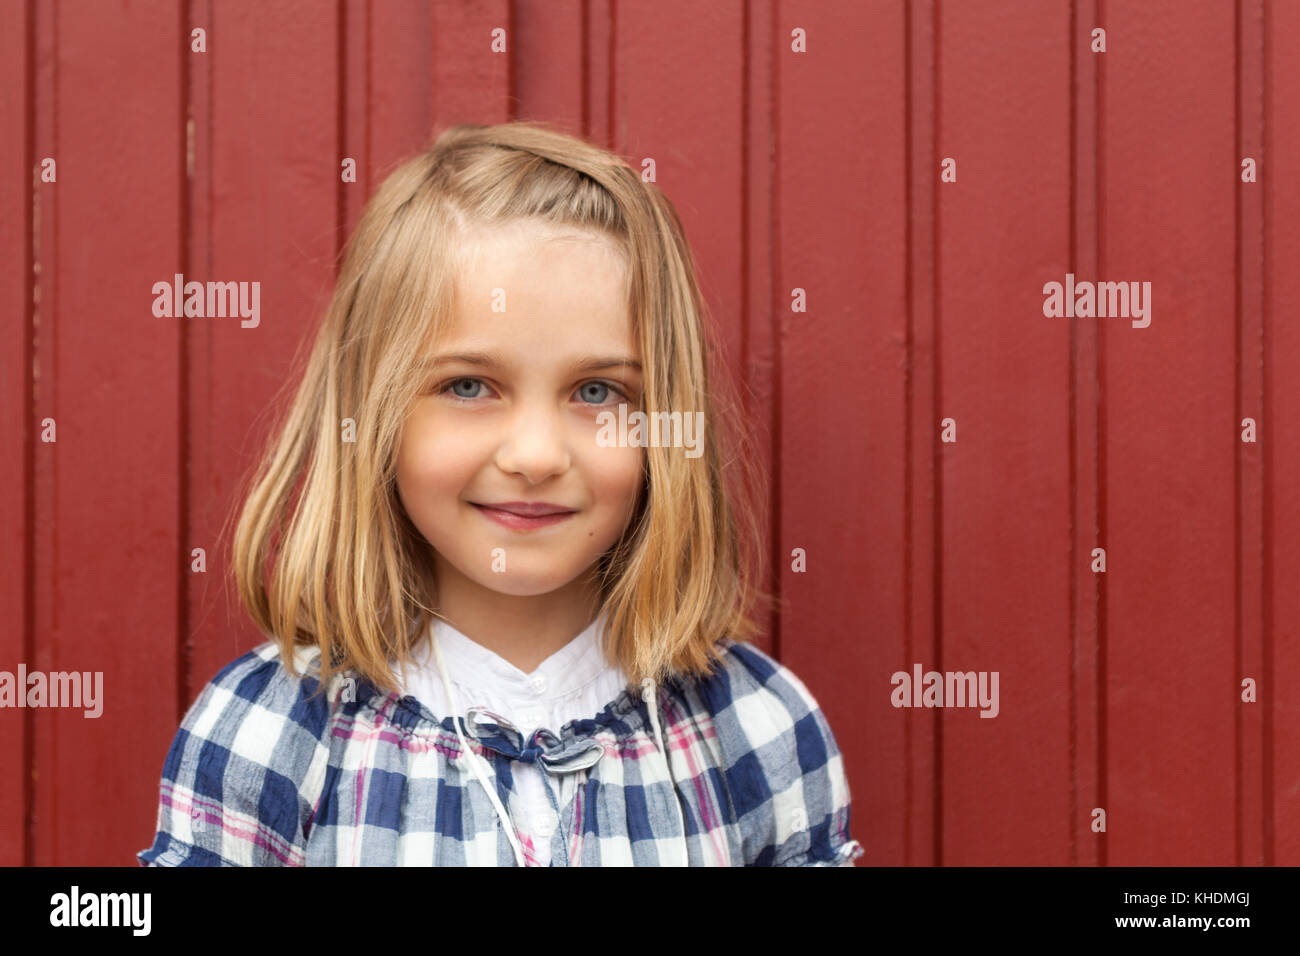 Im freien Kopf und Schultern Portrait von 7 Jahre alten Mädchen vor rot Holz- hintergrund Model Release: Ja. Property Release: Nein. Stockfoto